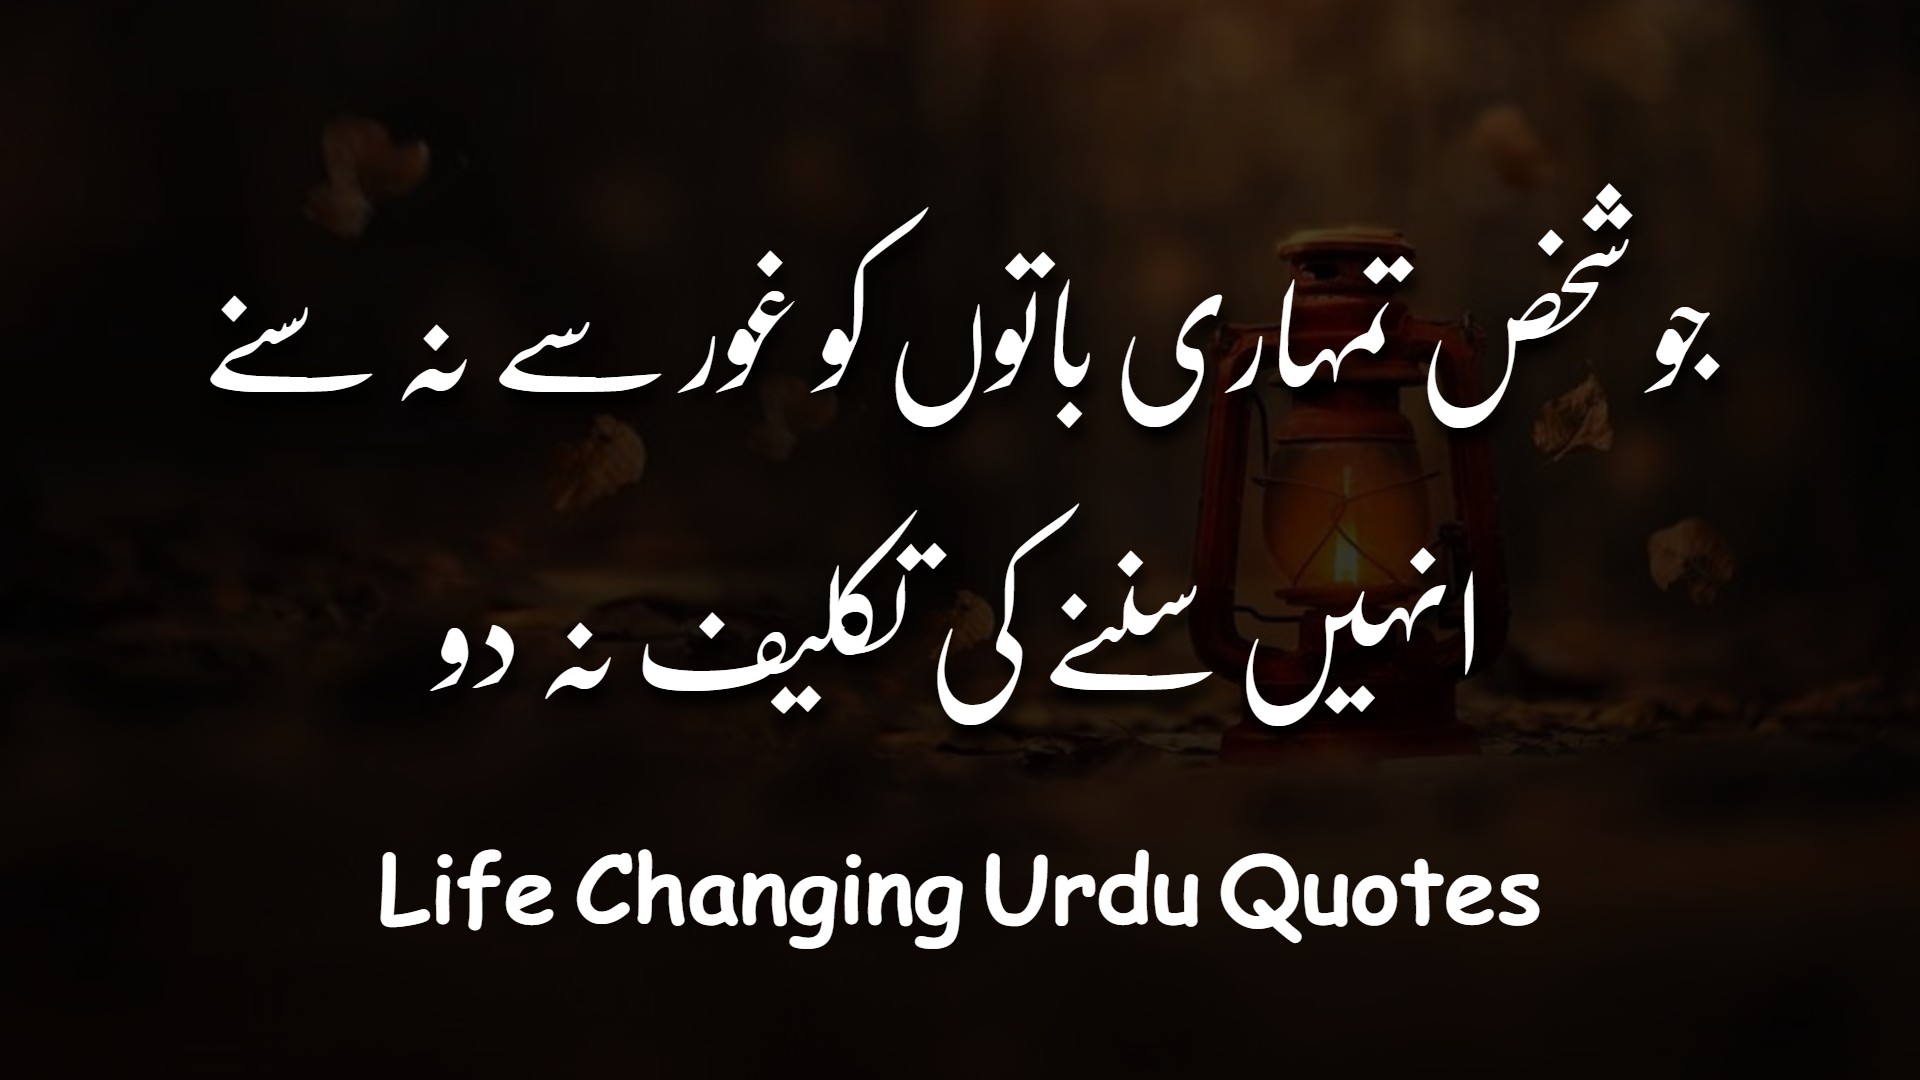 Best Urdu Quotes Images Urdu Life Quotes Urdunama Net